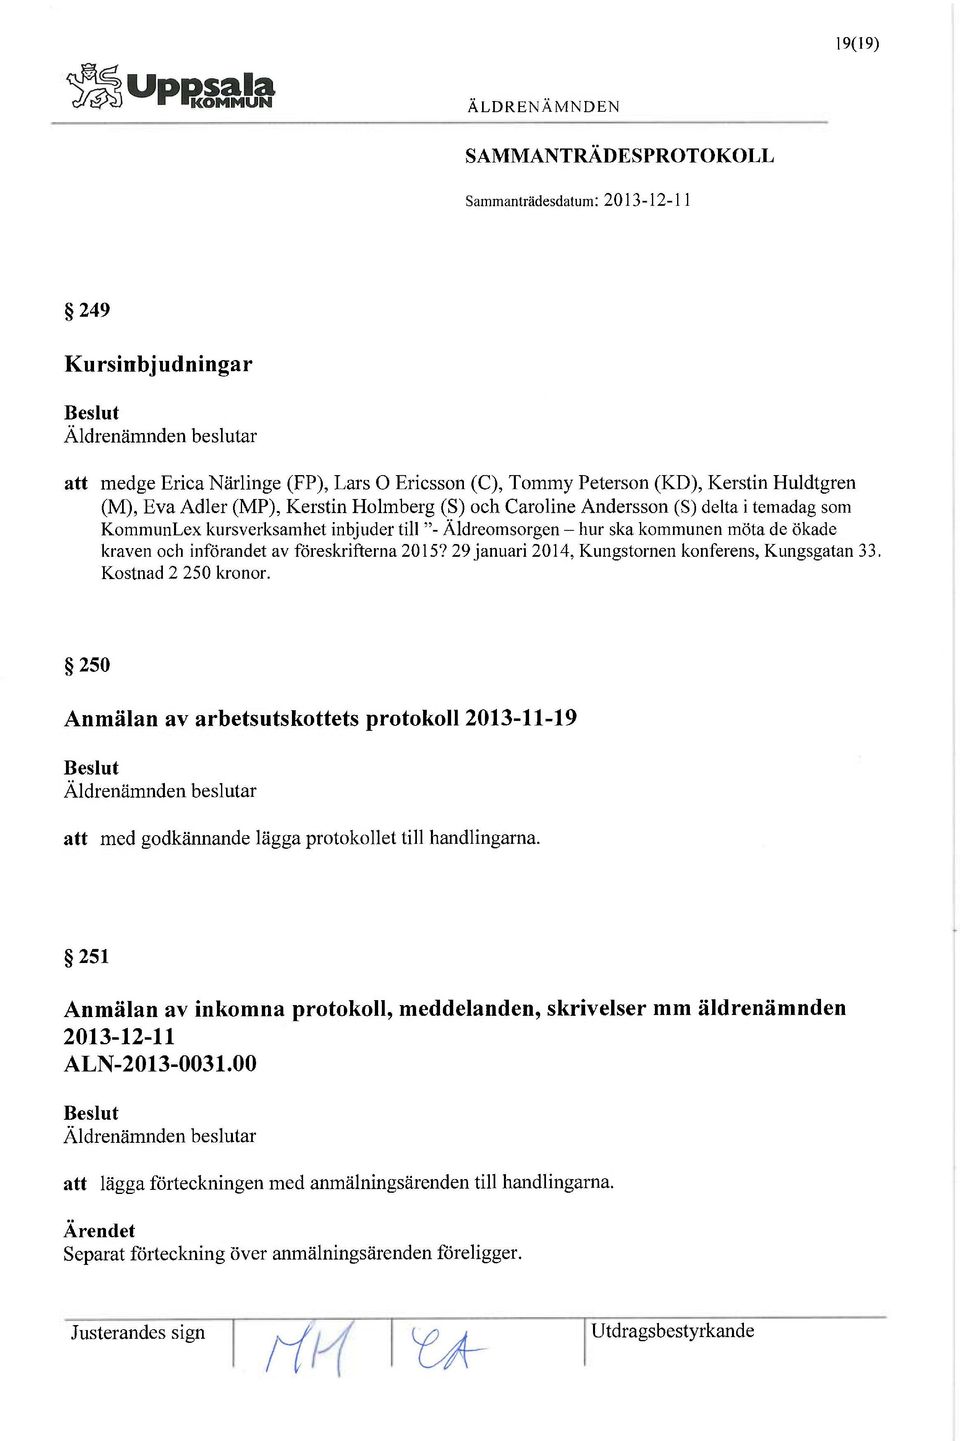 29 januari 2014, Kungstornen konferens, Kungsgatan 33. Kostnad 2 250 kronor. 250 Anmälan av arbetsutskottets protokoll 2013-11-19 att med godkännande lägga protokollet till handlingarna.